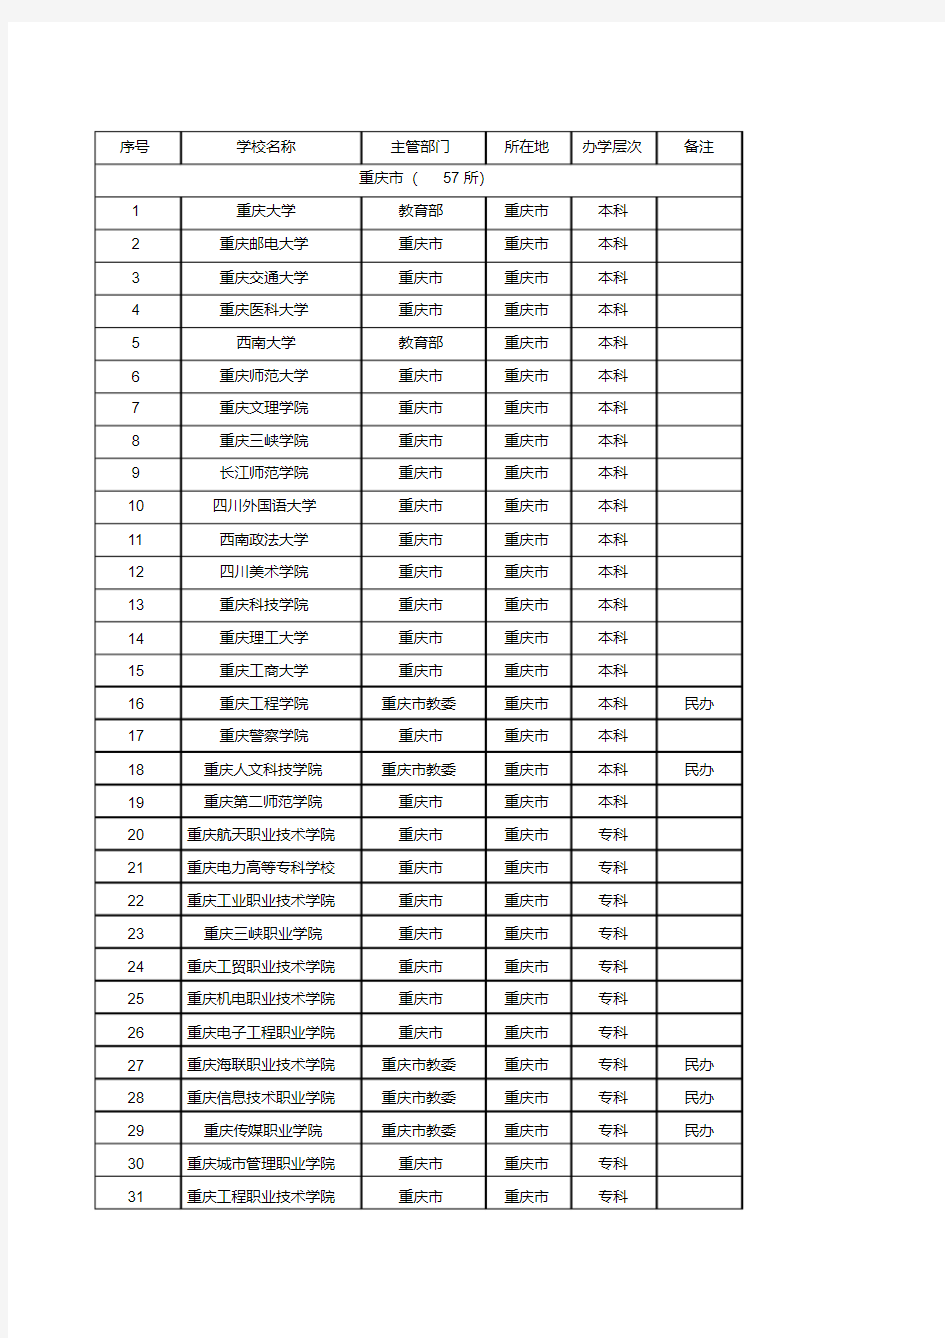 重庆市普通高校名单(57所)